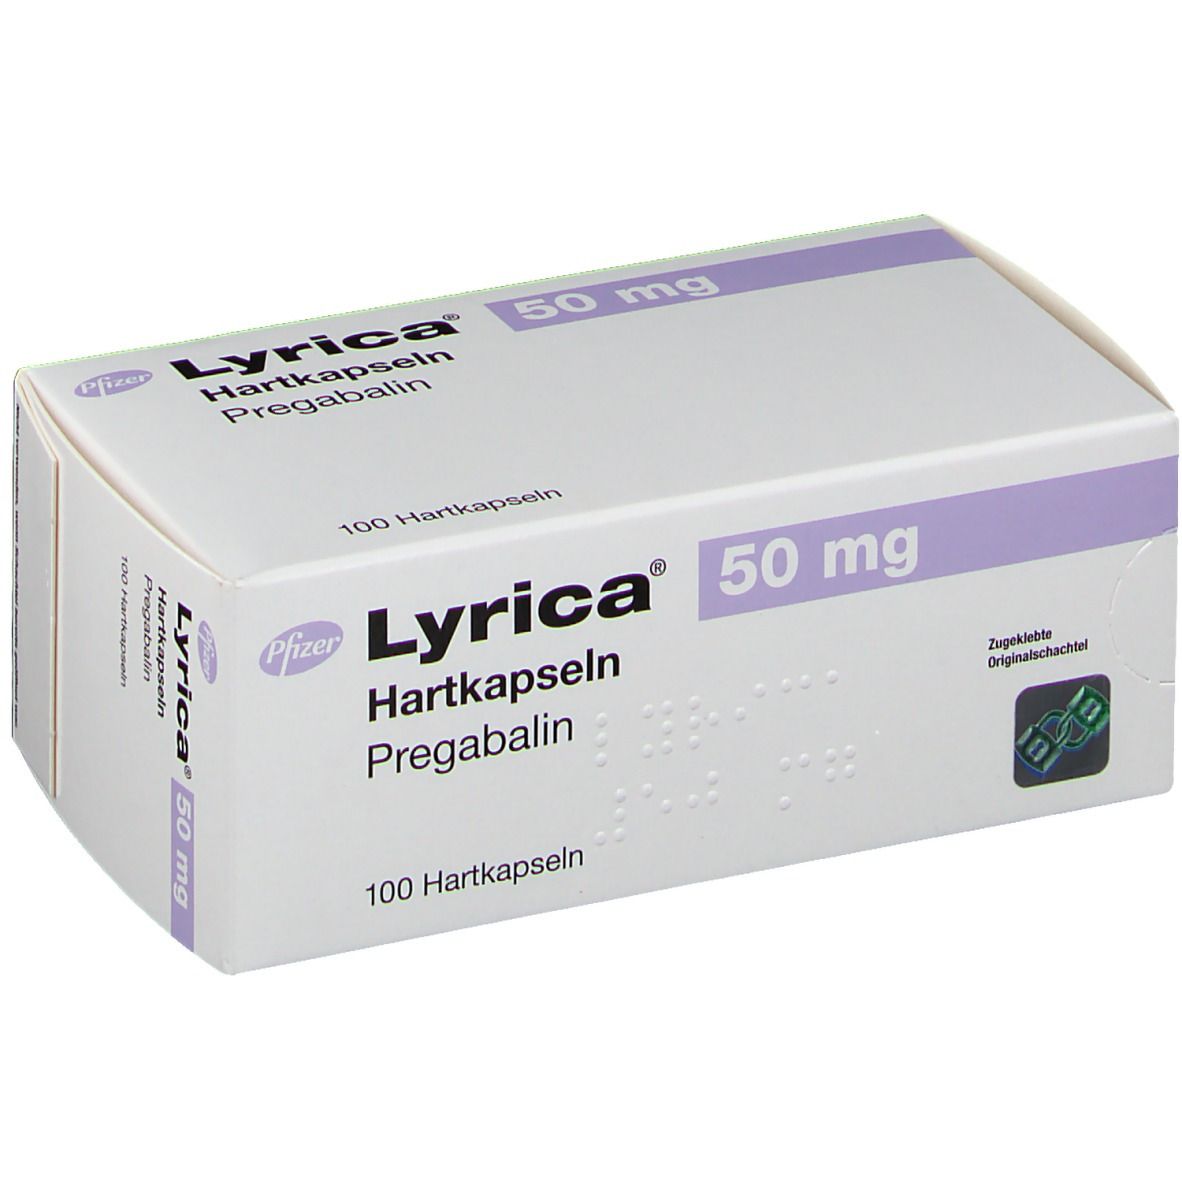 Прегабалин на латыни. Ketileft 50 MG. Прегабалин 50 мг. Lyrica 150 MG. Прегабалин 600 мг.